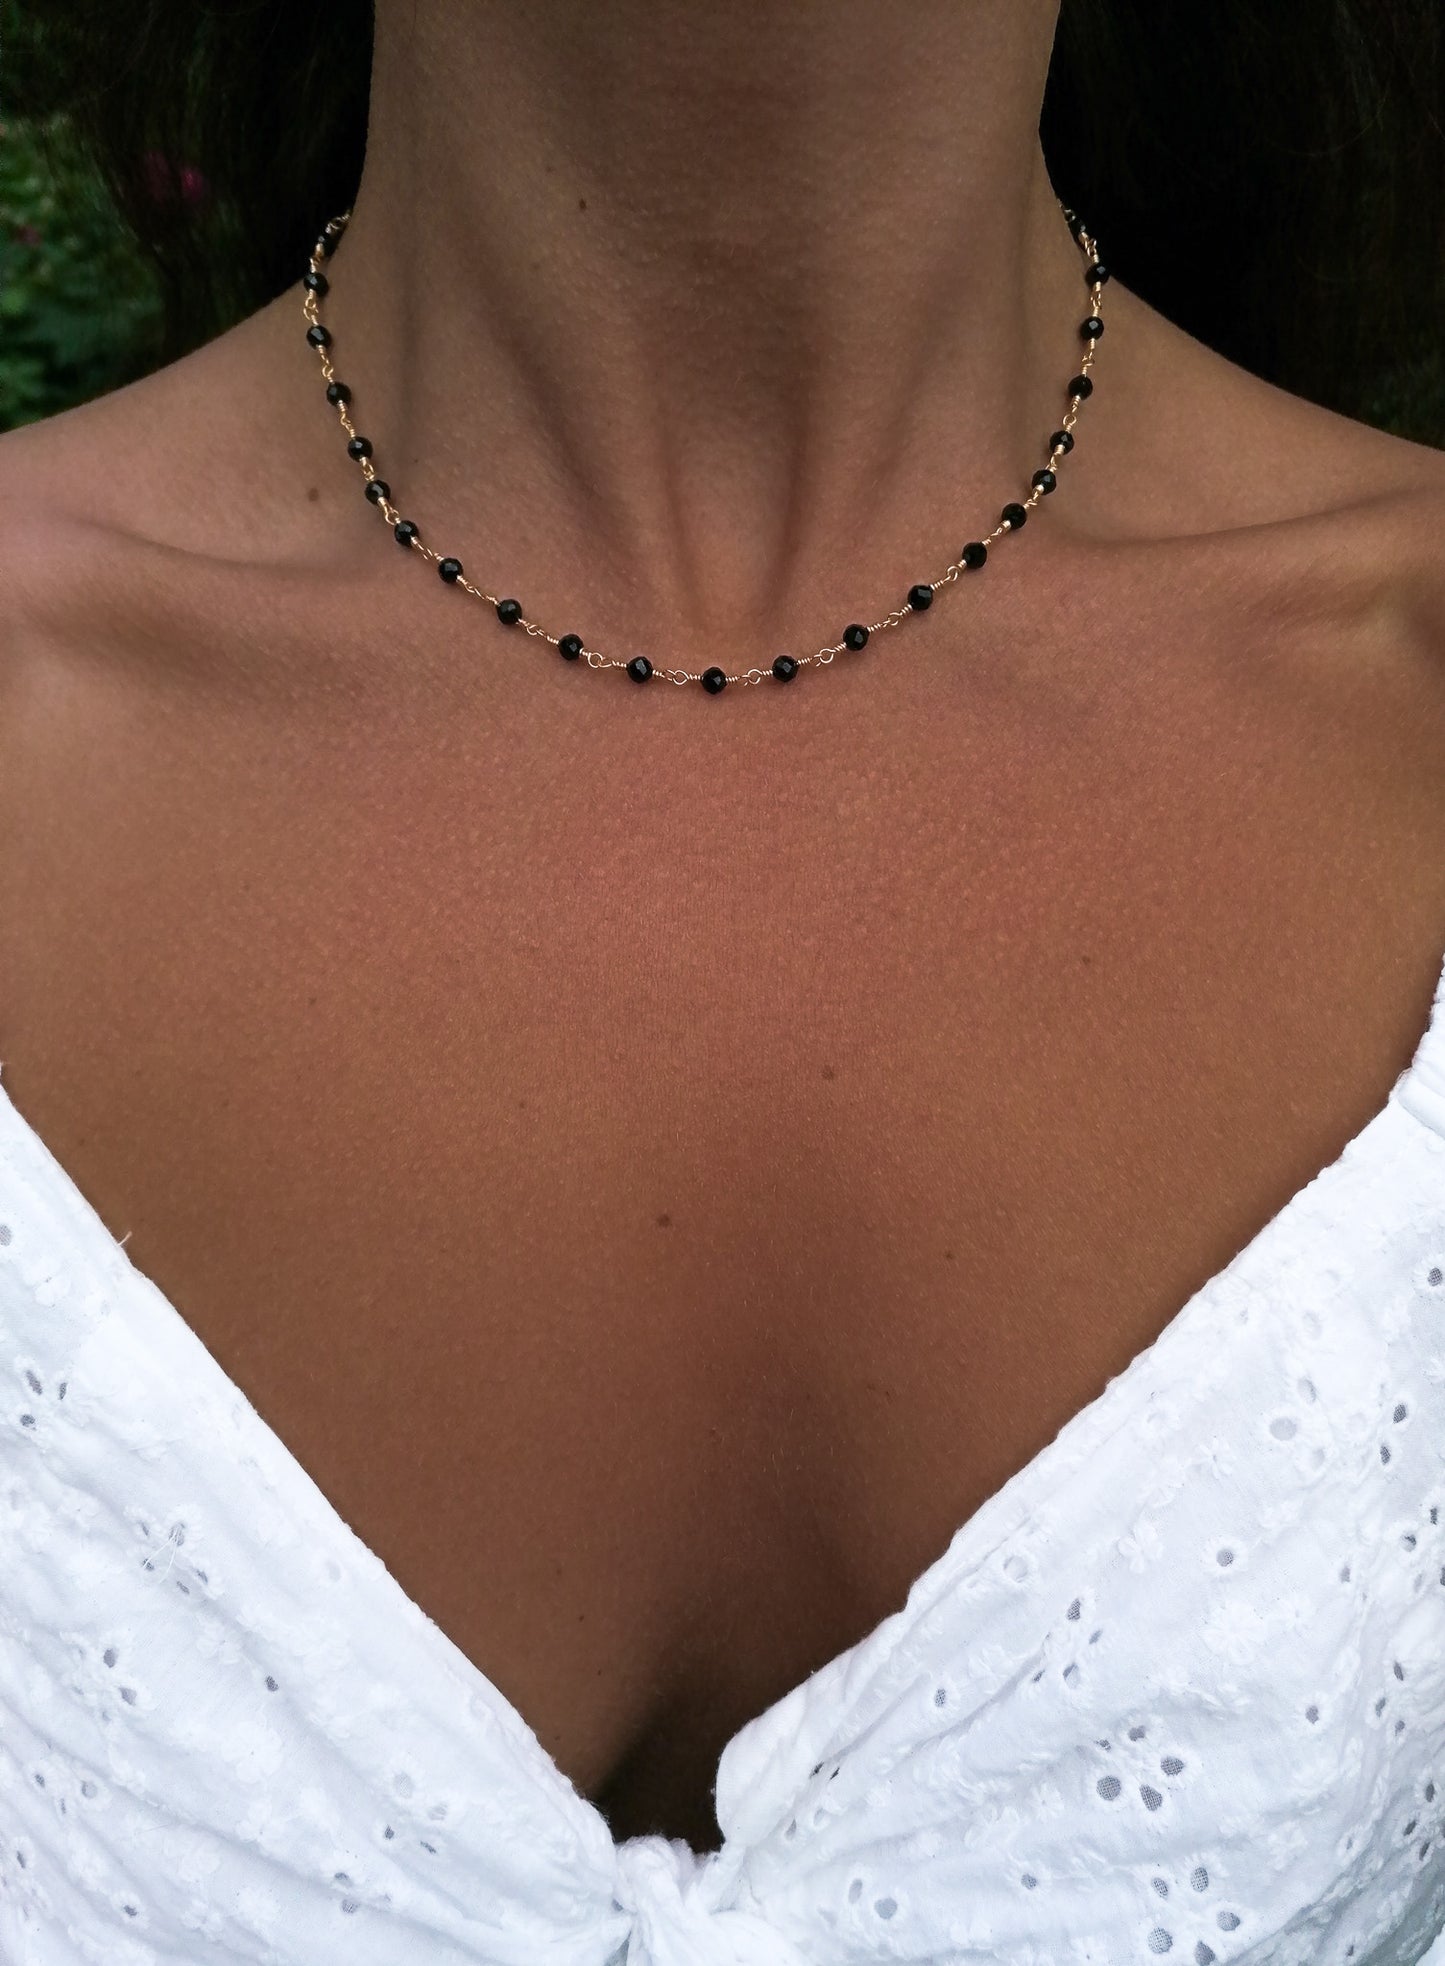 Monaco necklace - black spinel